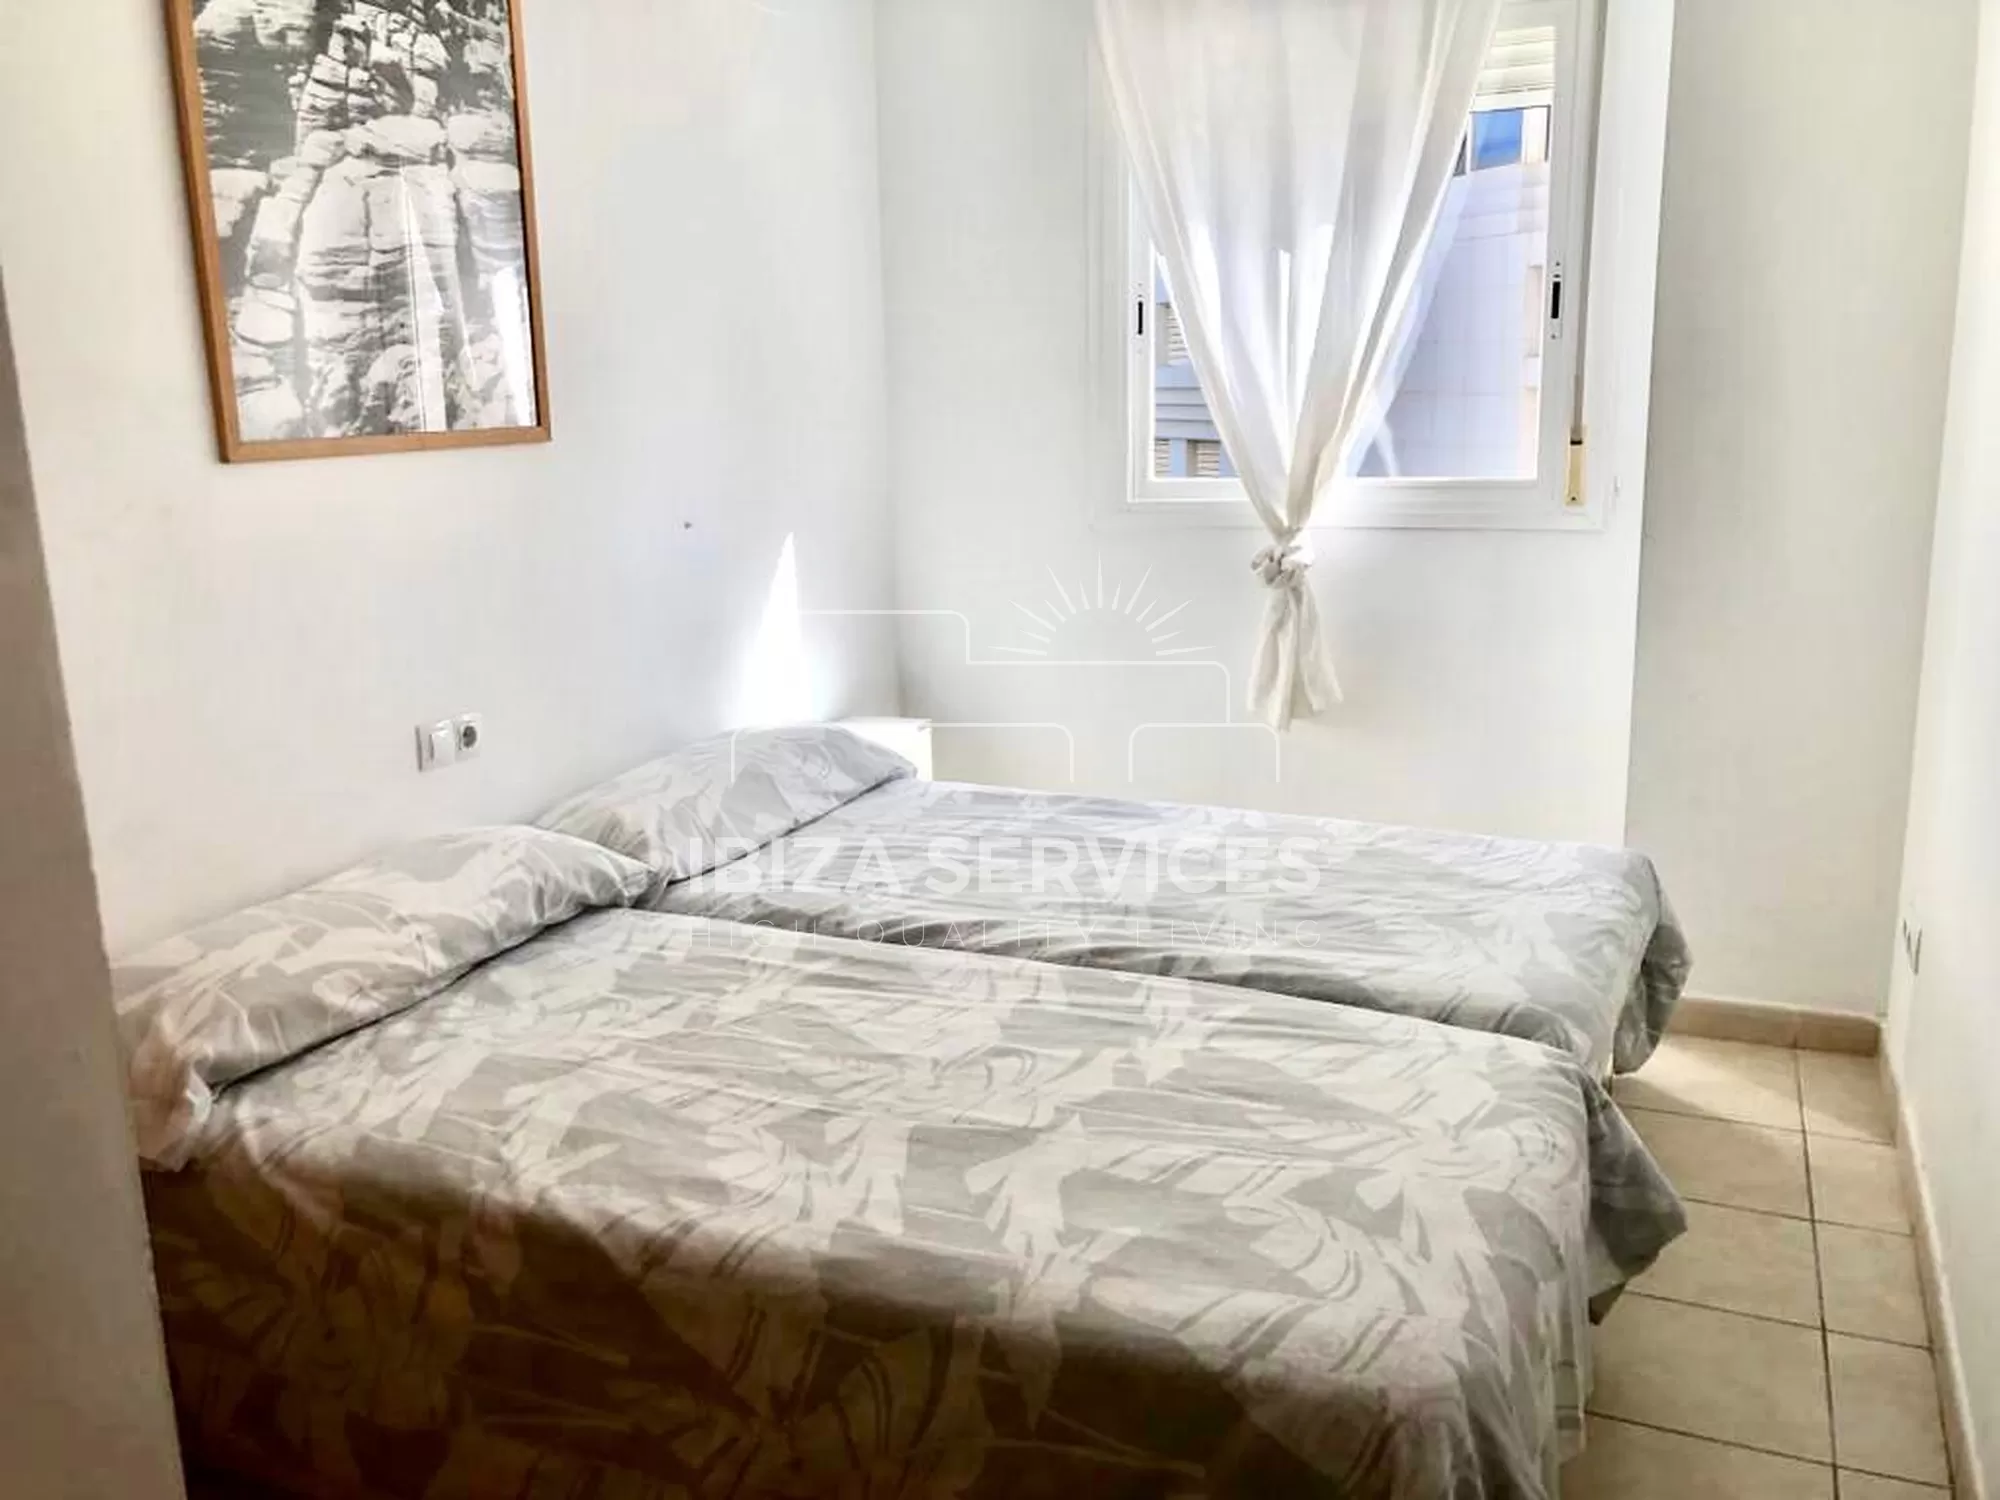 Location Saisonnière : Appartement 2 Chambres Près de la Plage de Talamanca, Ibiza.